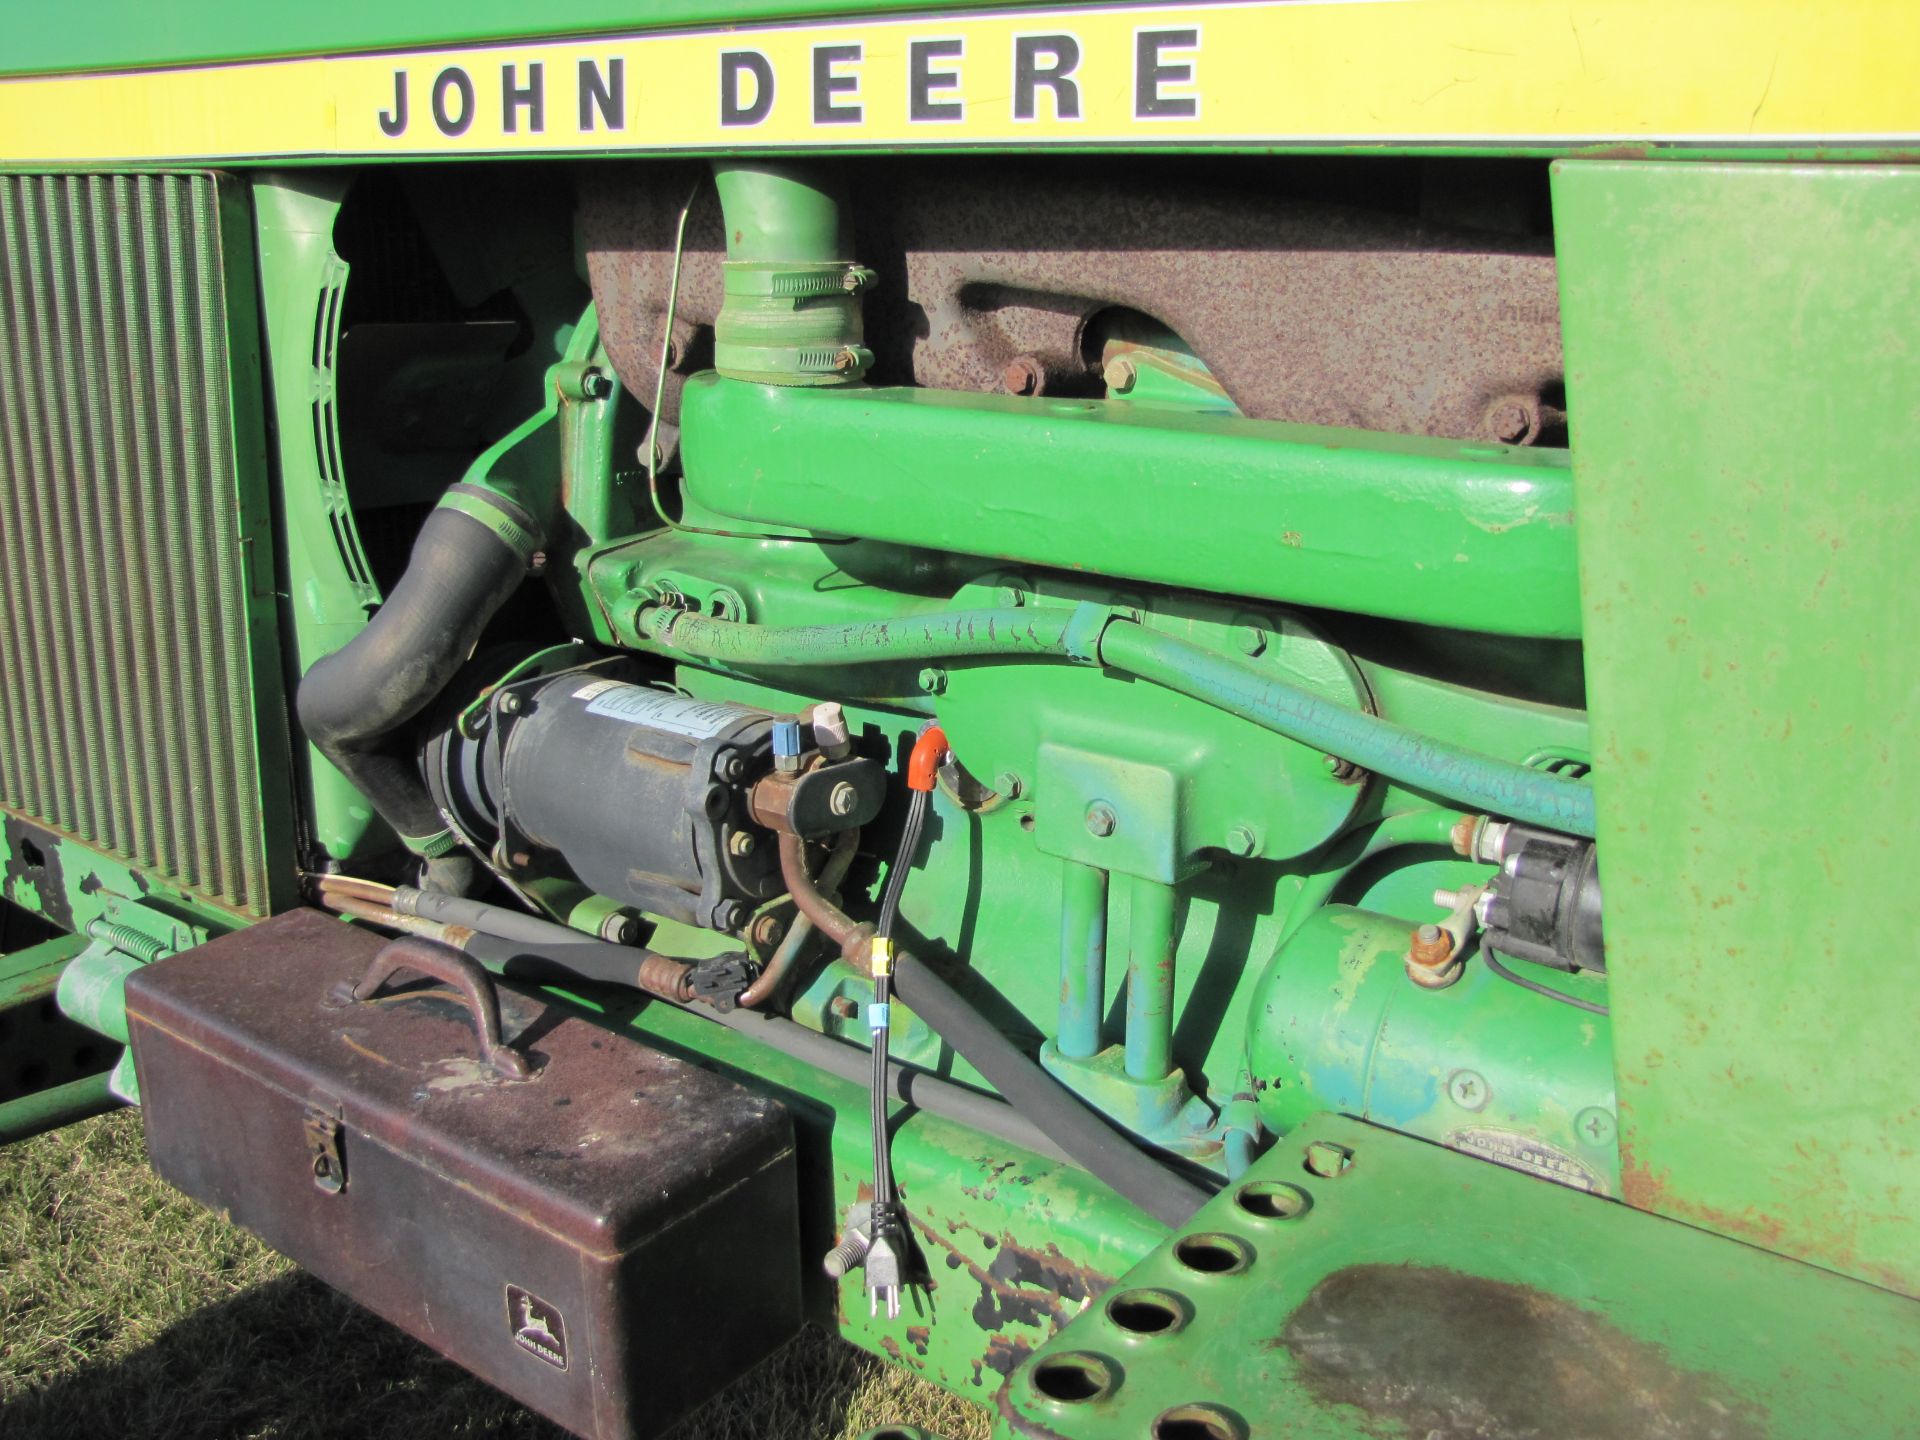 John Deere 4230 tractor - Image 14 of 49